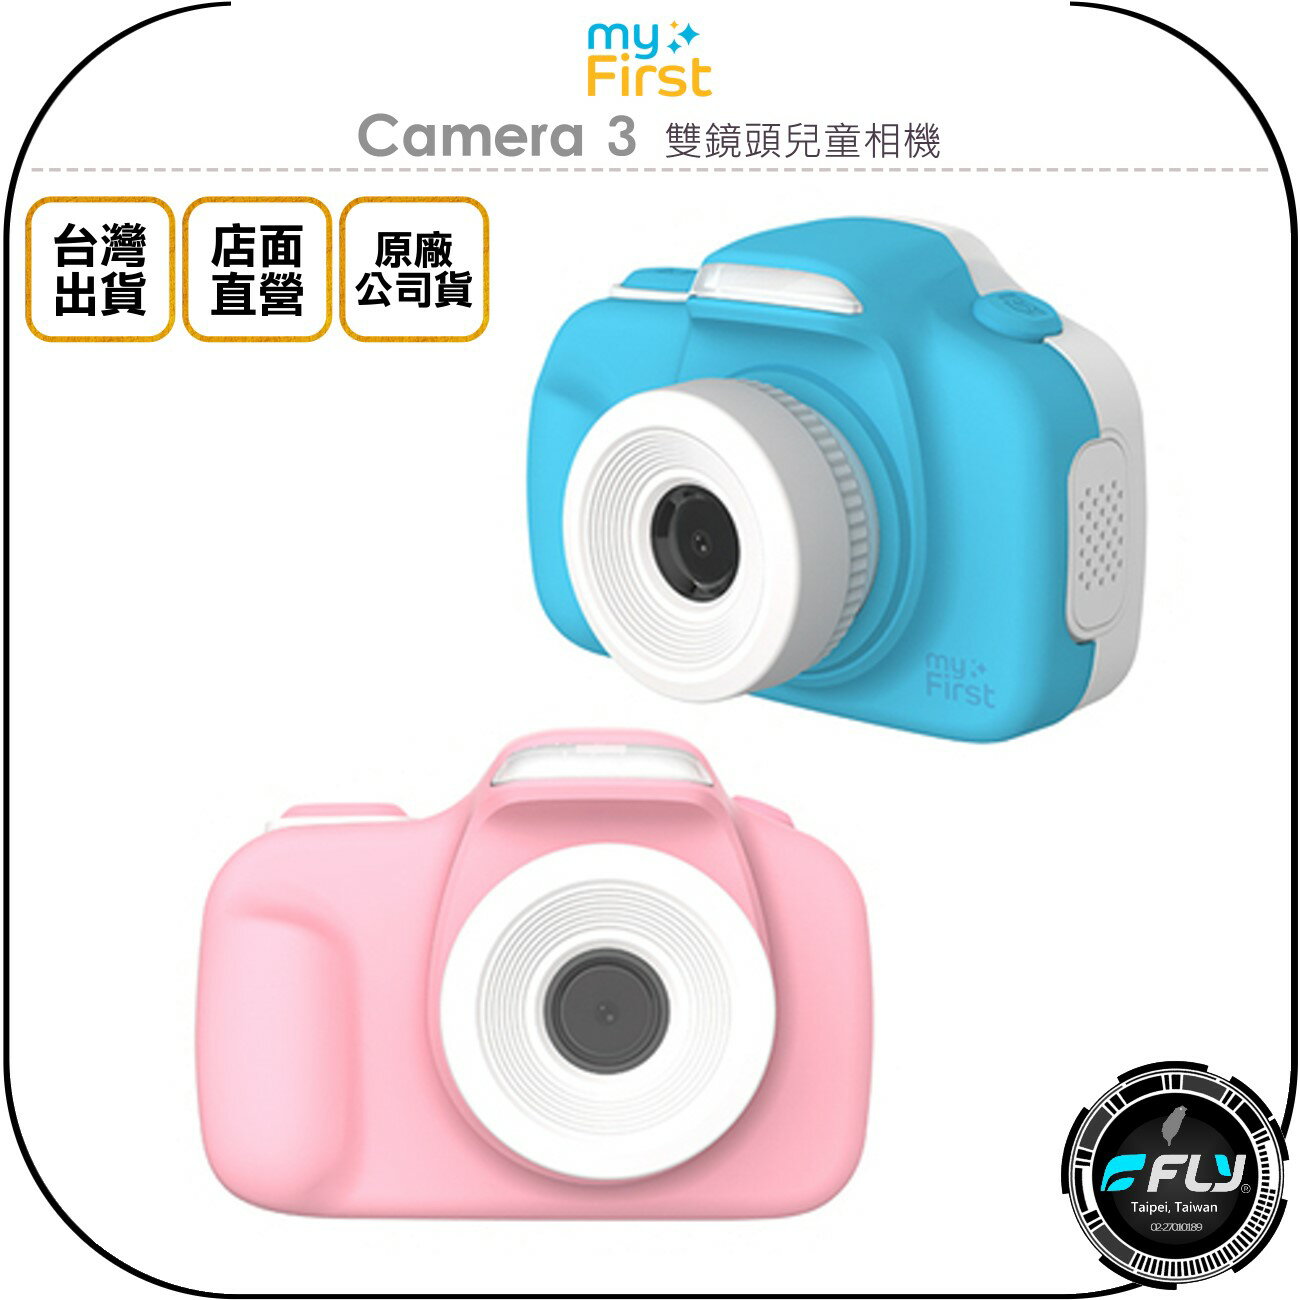 《飛翔無線3C》myFirst Camera 3 雙鏡頭兒童相機◉公司貨◉1600萬像素◉微距鏡頭◉LED閃光燈